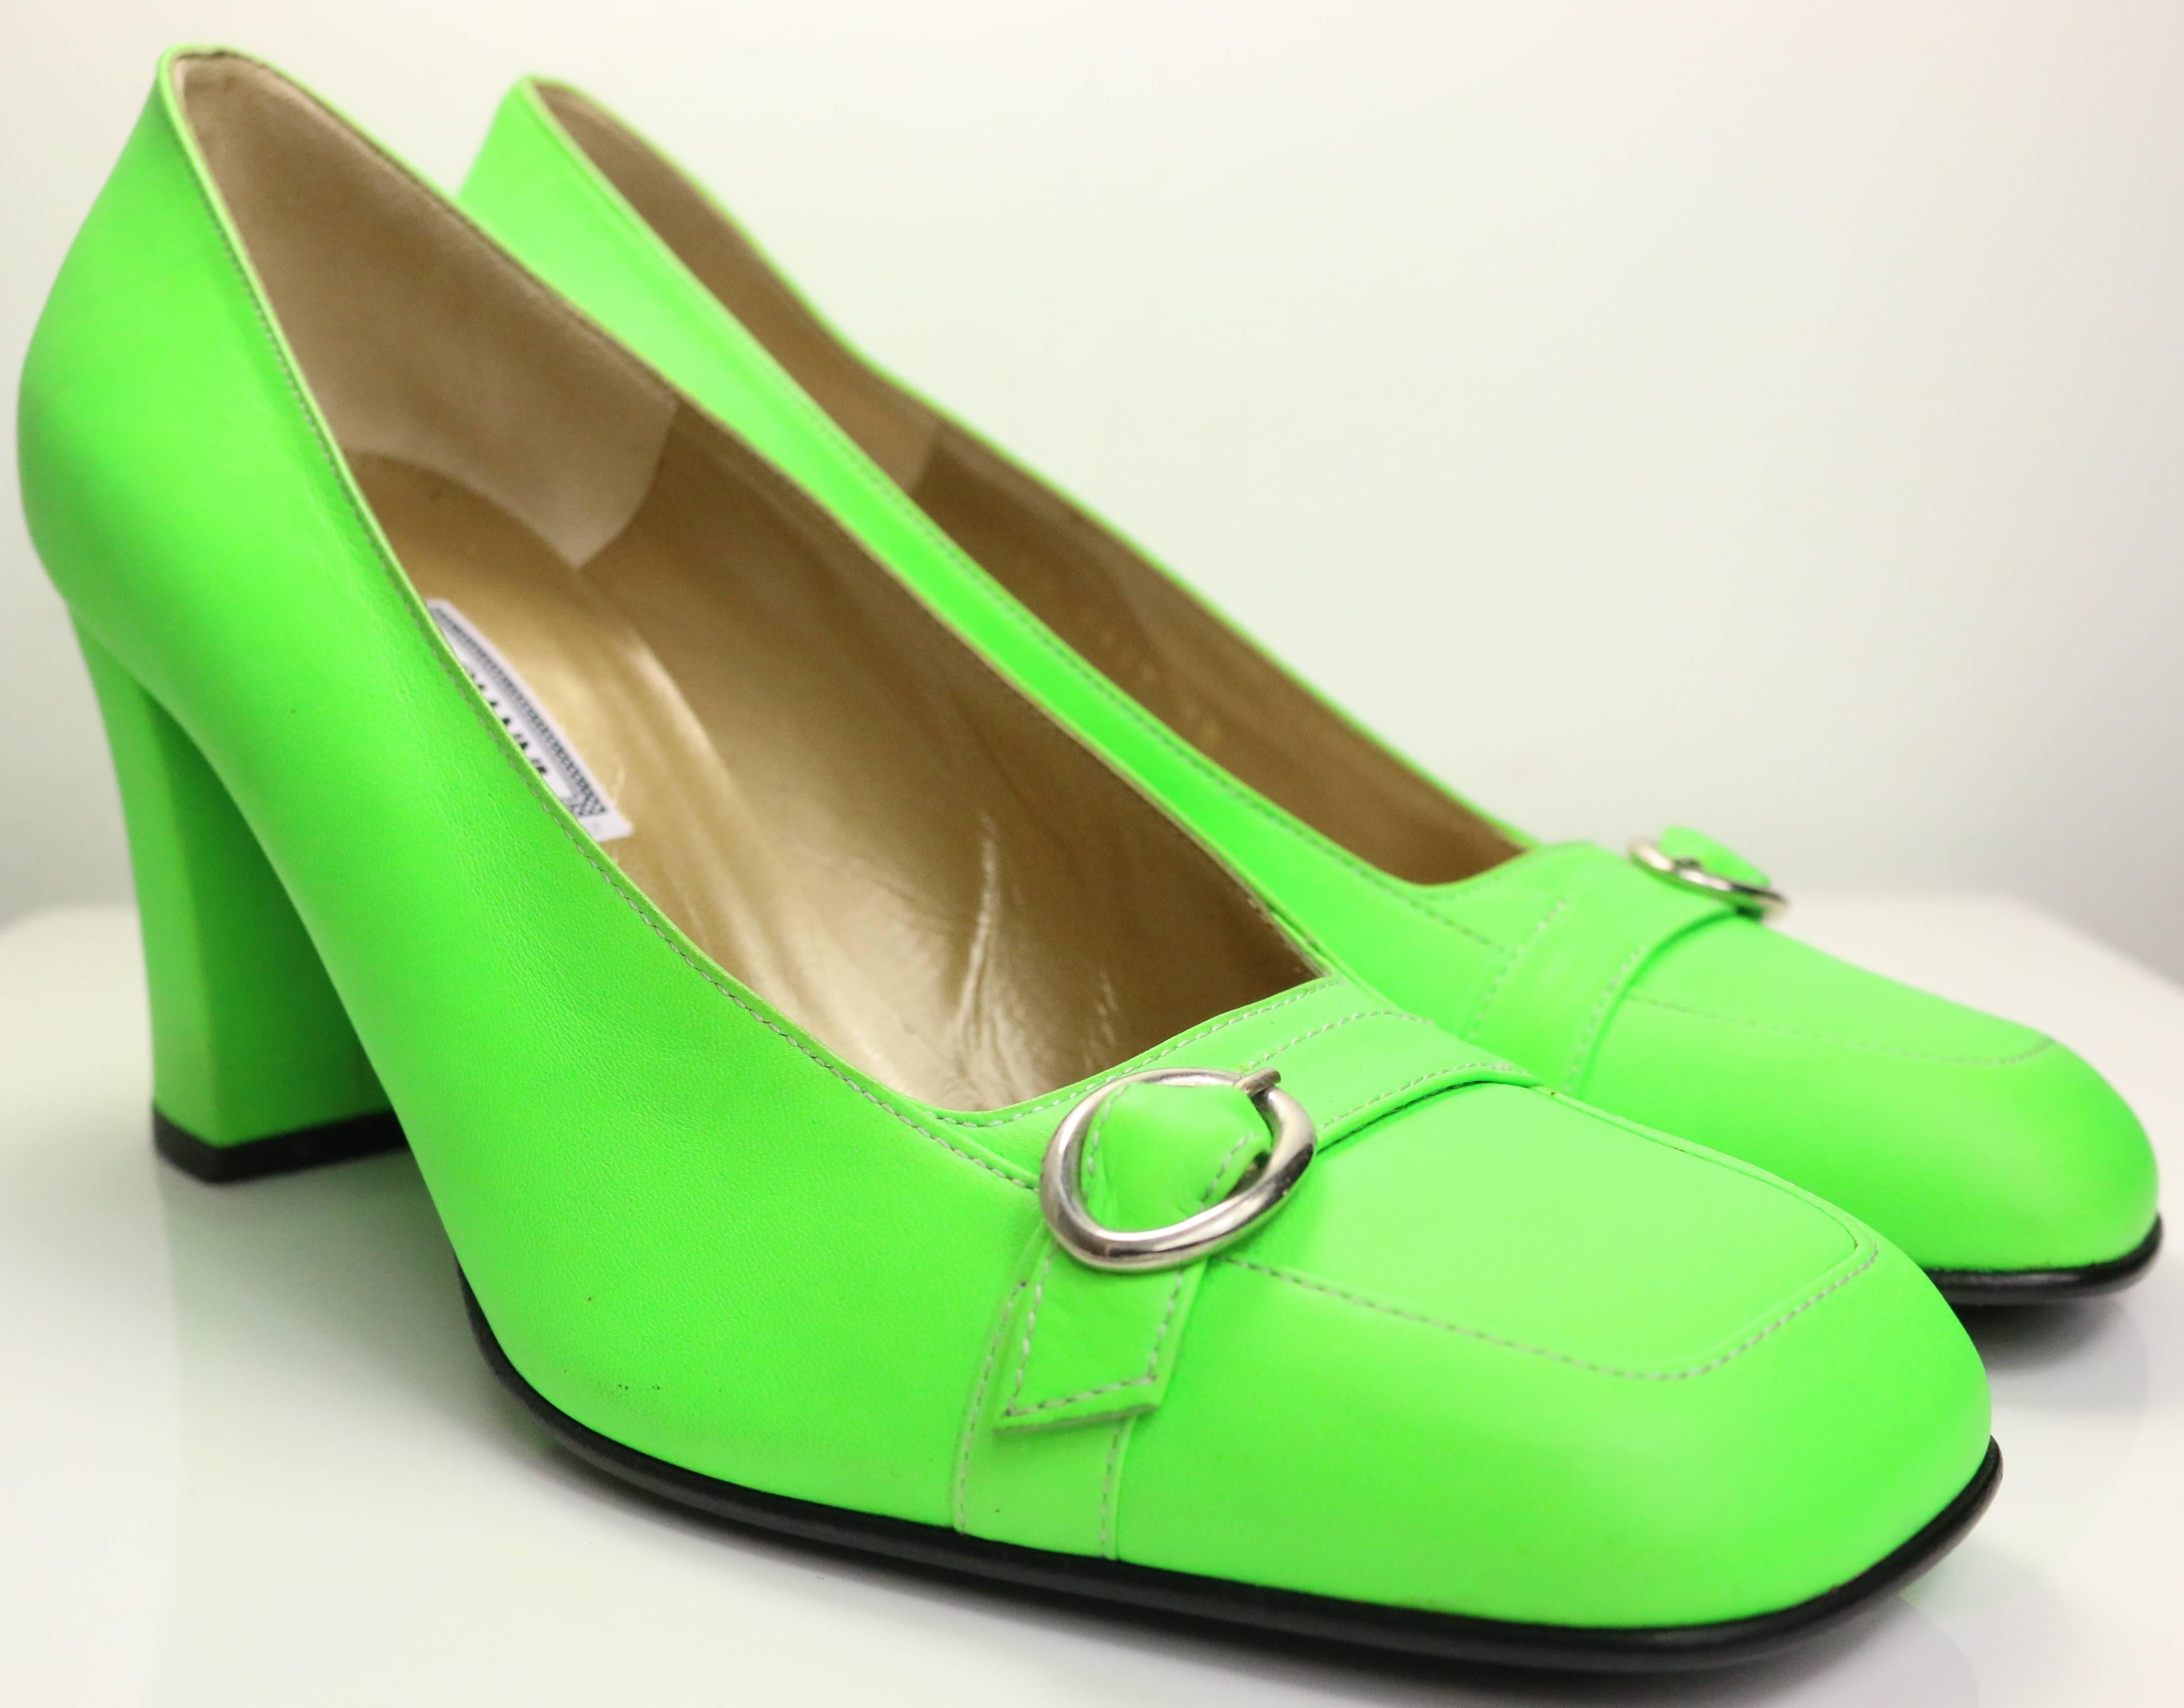 - Chaussures à talons en cuir vert fluo Gianni Versace des années 90 avec détails de boucles sur le devant. 

- Taille 38. 

- Fabriqué en Italie. 

